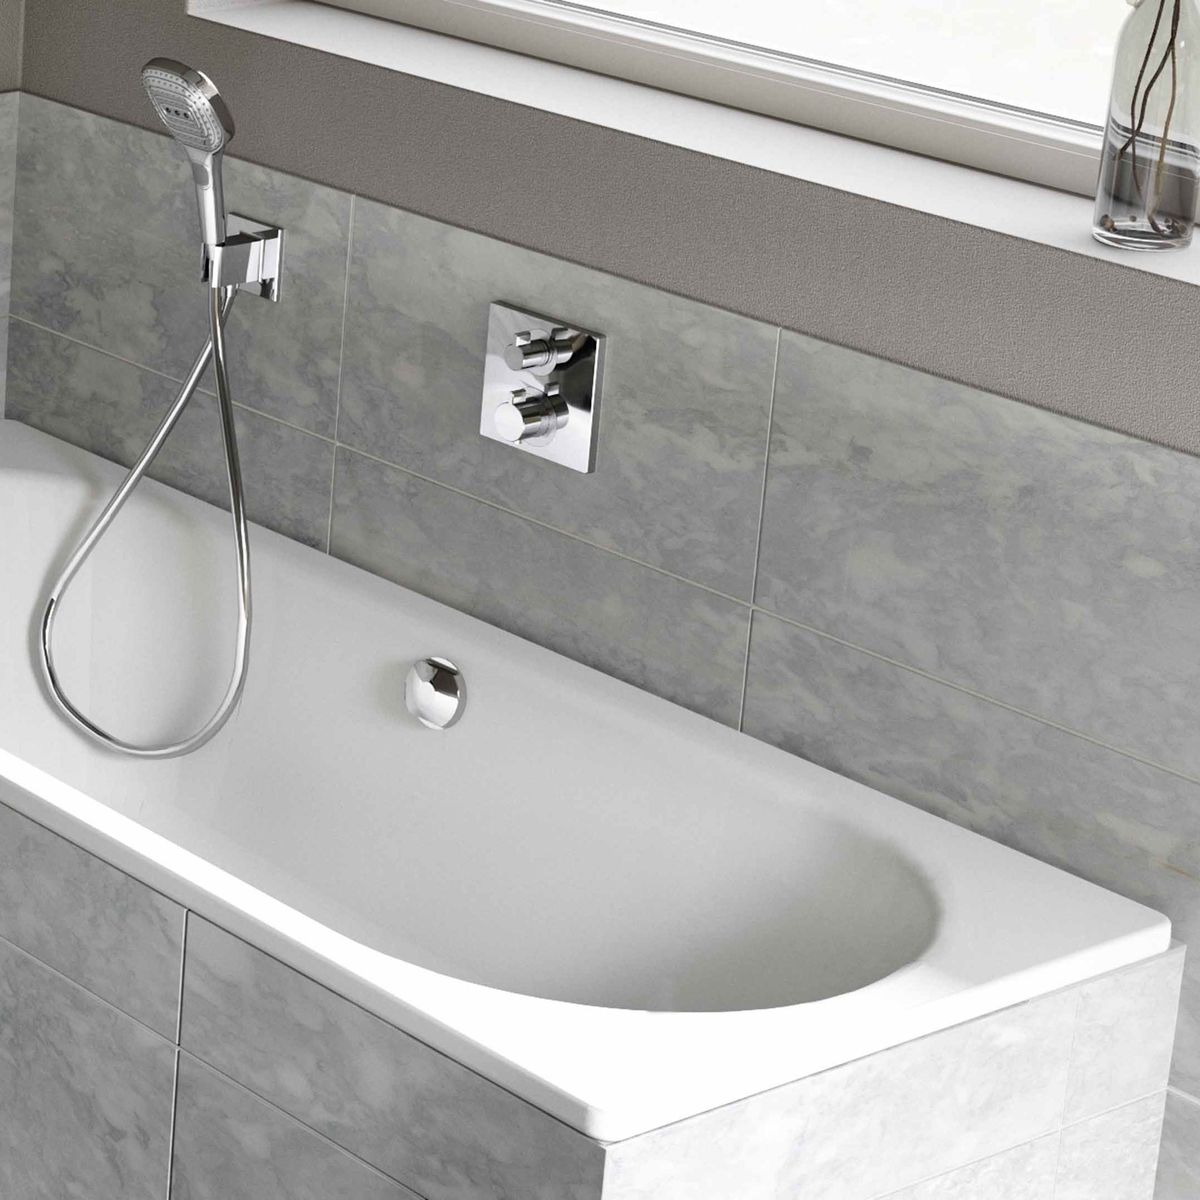 Plieninė vonia Kaldewei Classic Duo 180x80 cm, balta, 291000010001